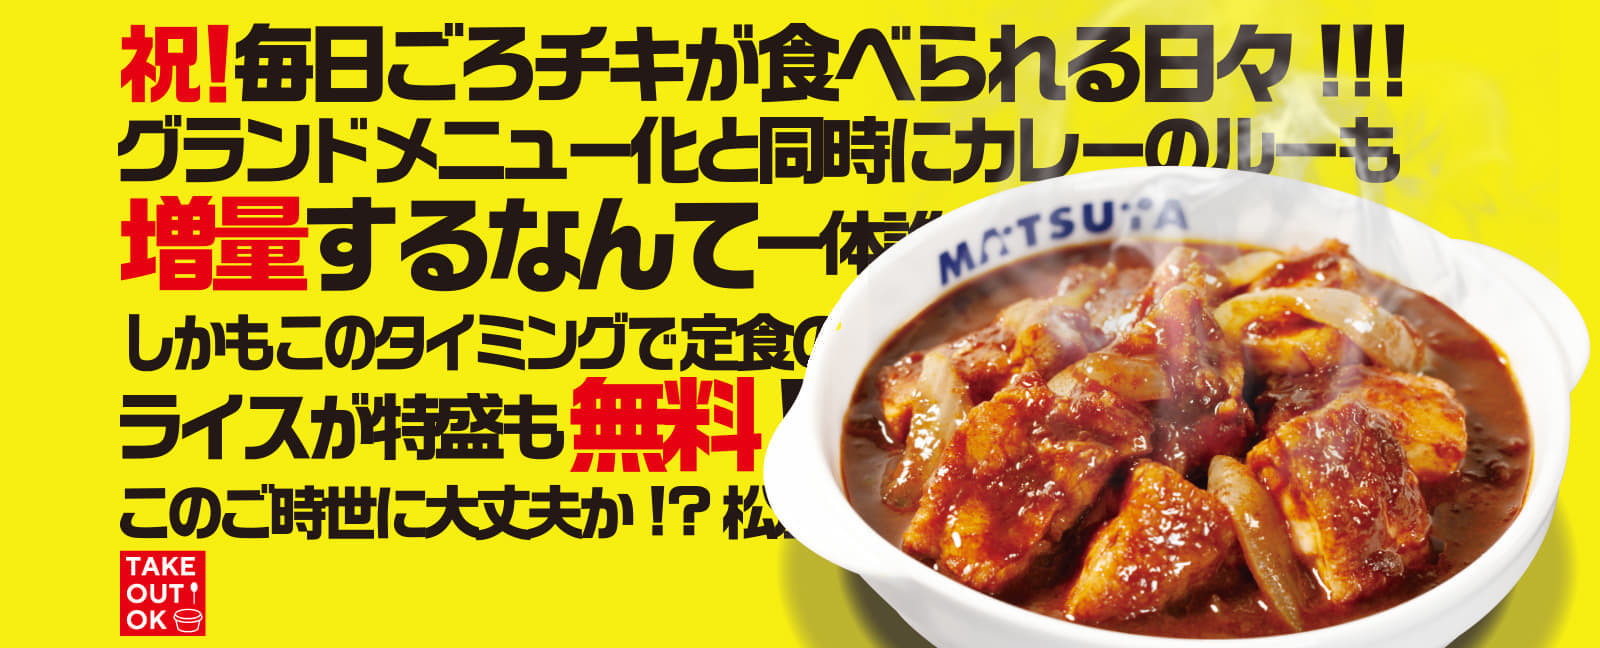 https://www.matsuyafoods.co.jp/matsuya/news_lp/220502_header_pc_01_02.jpg